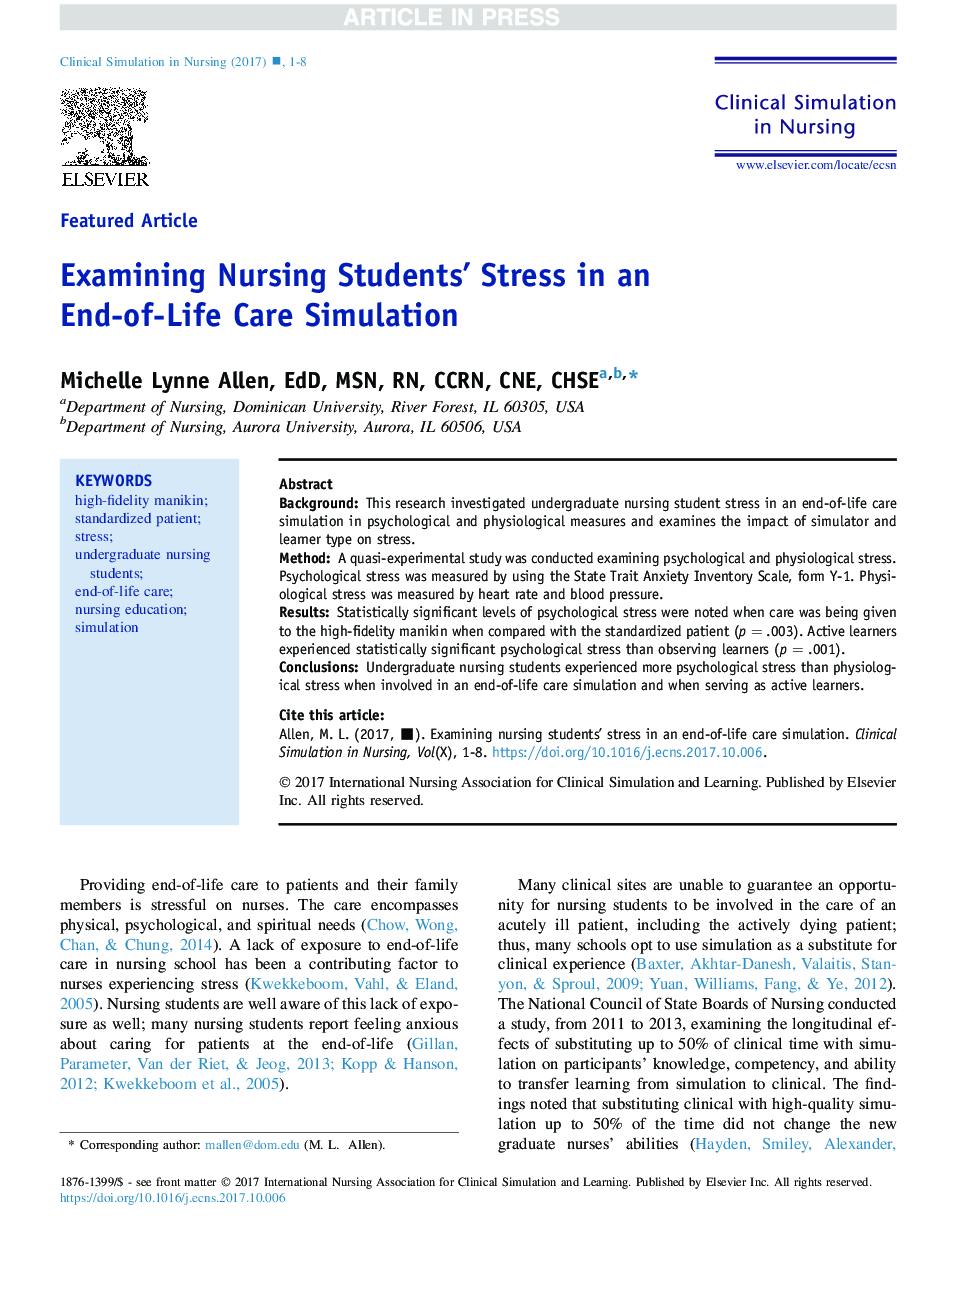 بررسی استرس دانشجویان پرستاری در شبیه سازی مراقبت از زندگی 